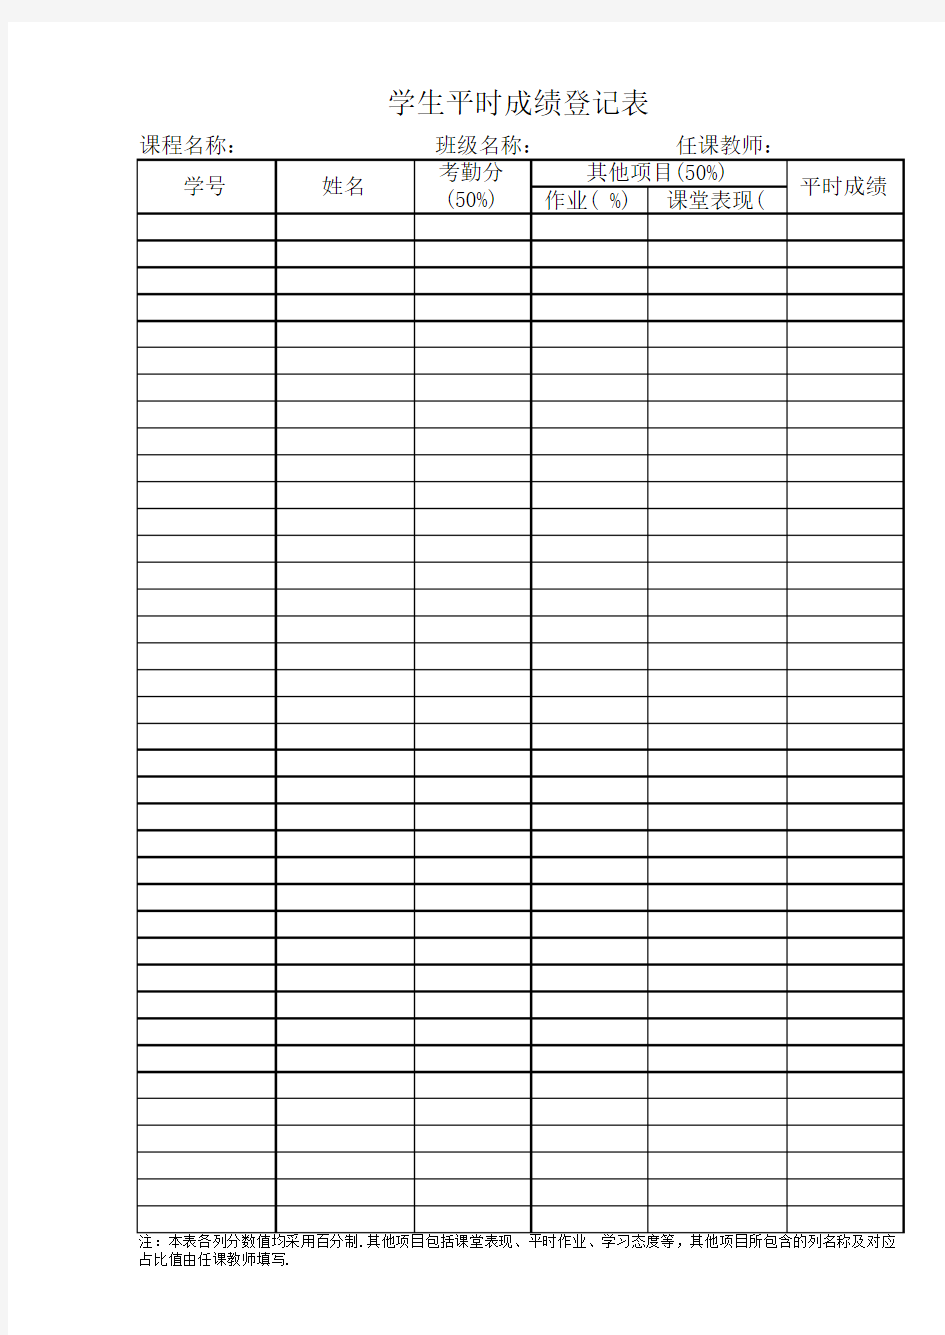 学生平时成绩登记表(16K纸单面打印,保留学校给定表格格式)